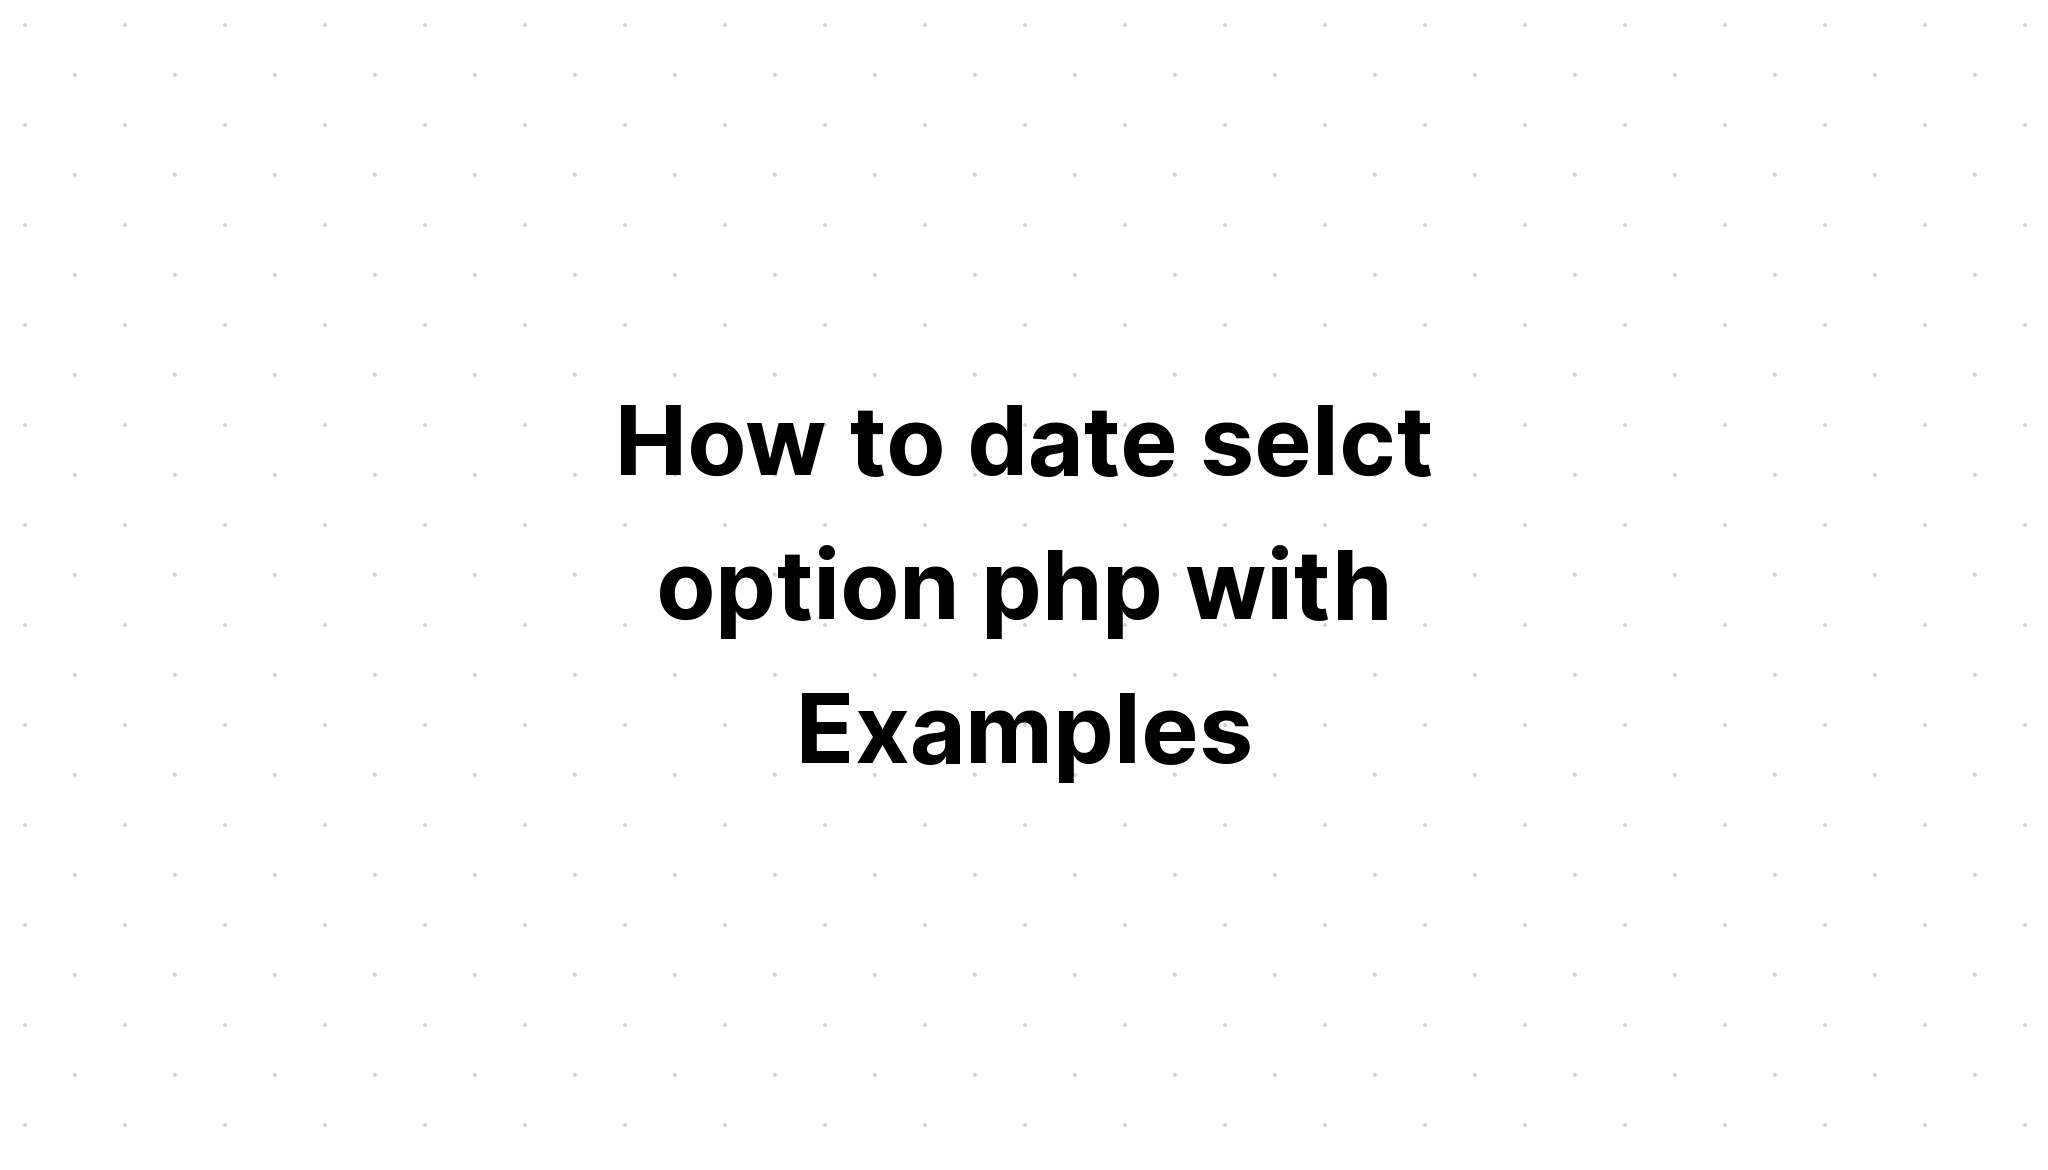 Cara berkencan pilih opsi php dengan Contoh